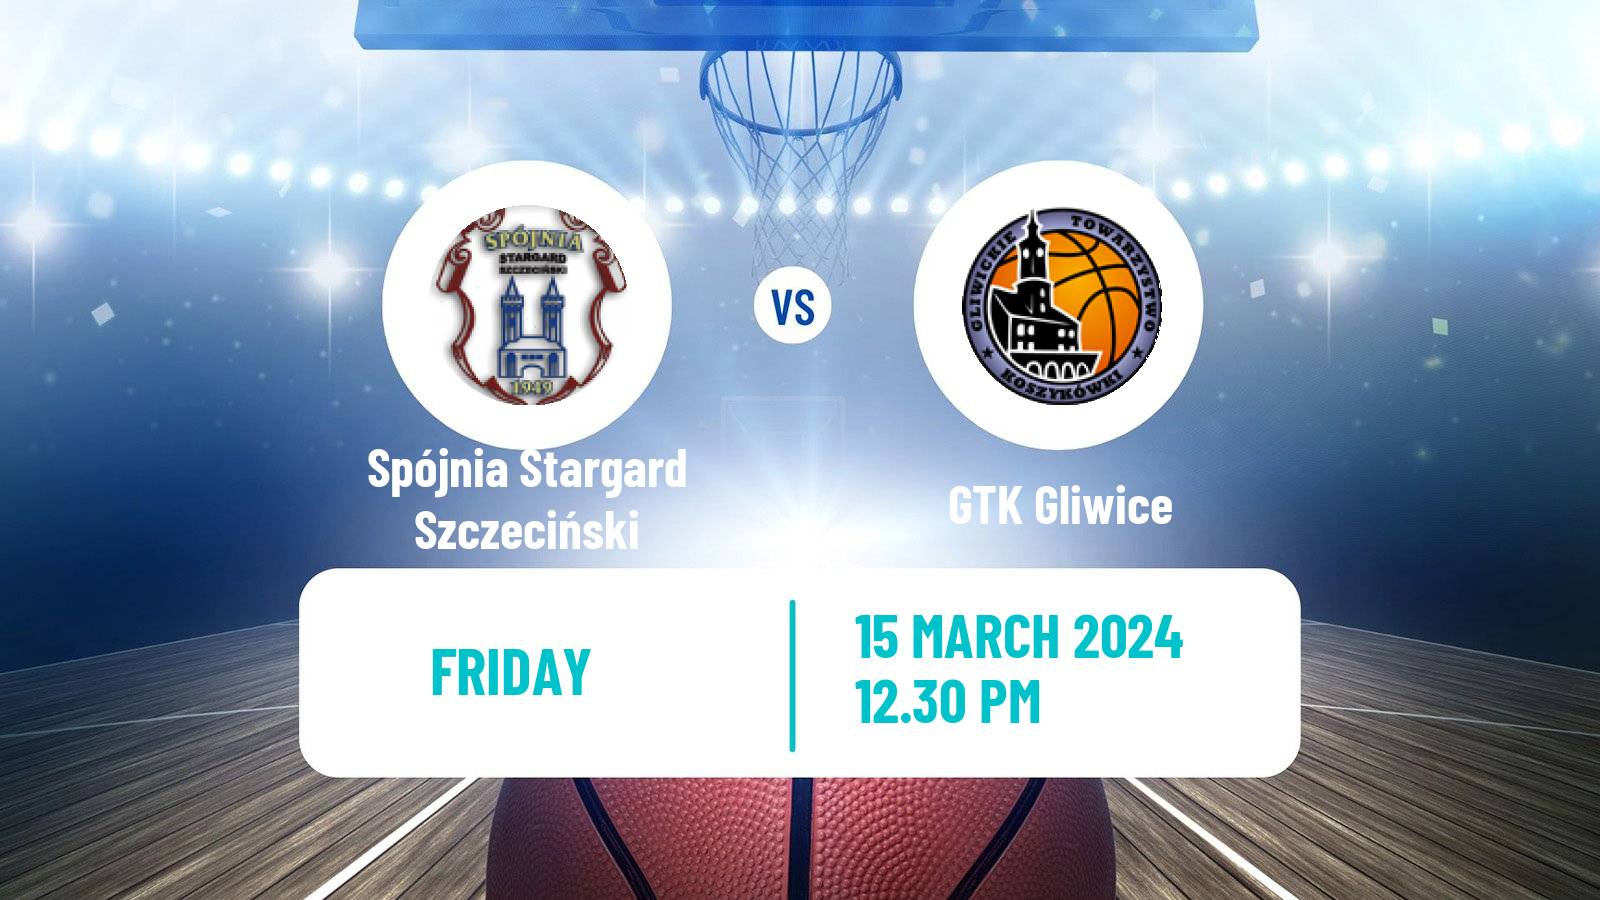 Basketball Polish Basket Liga Spójnia Stargard Szczeciński - GTK Gliwice